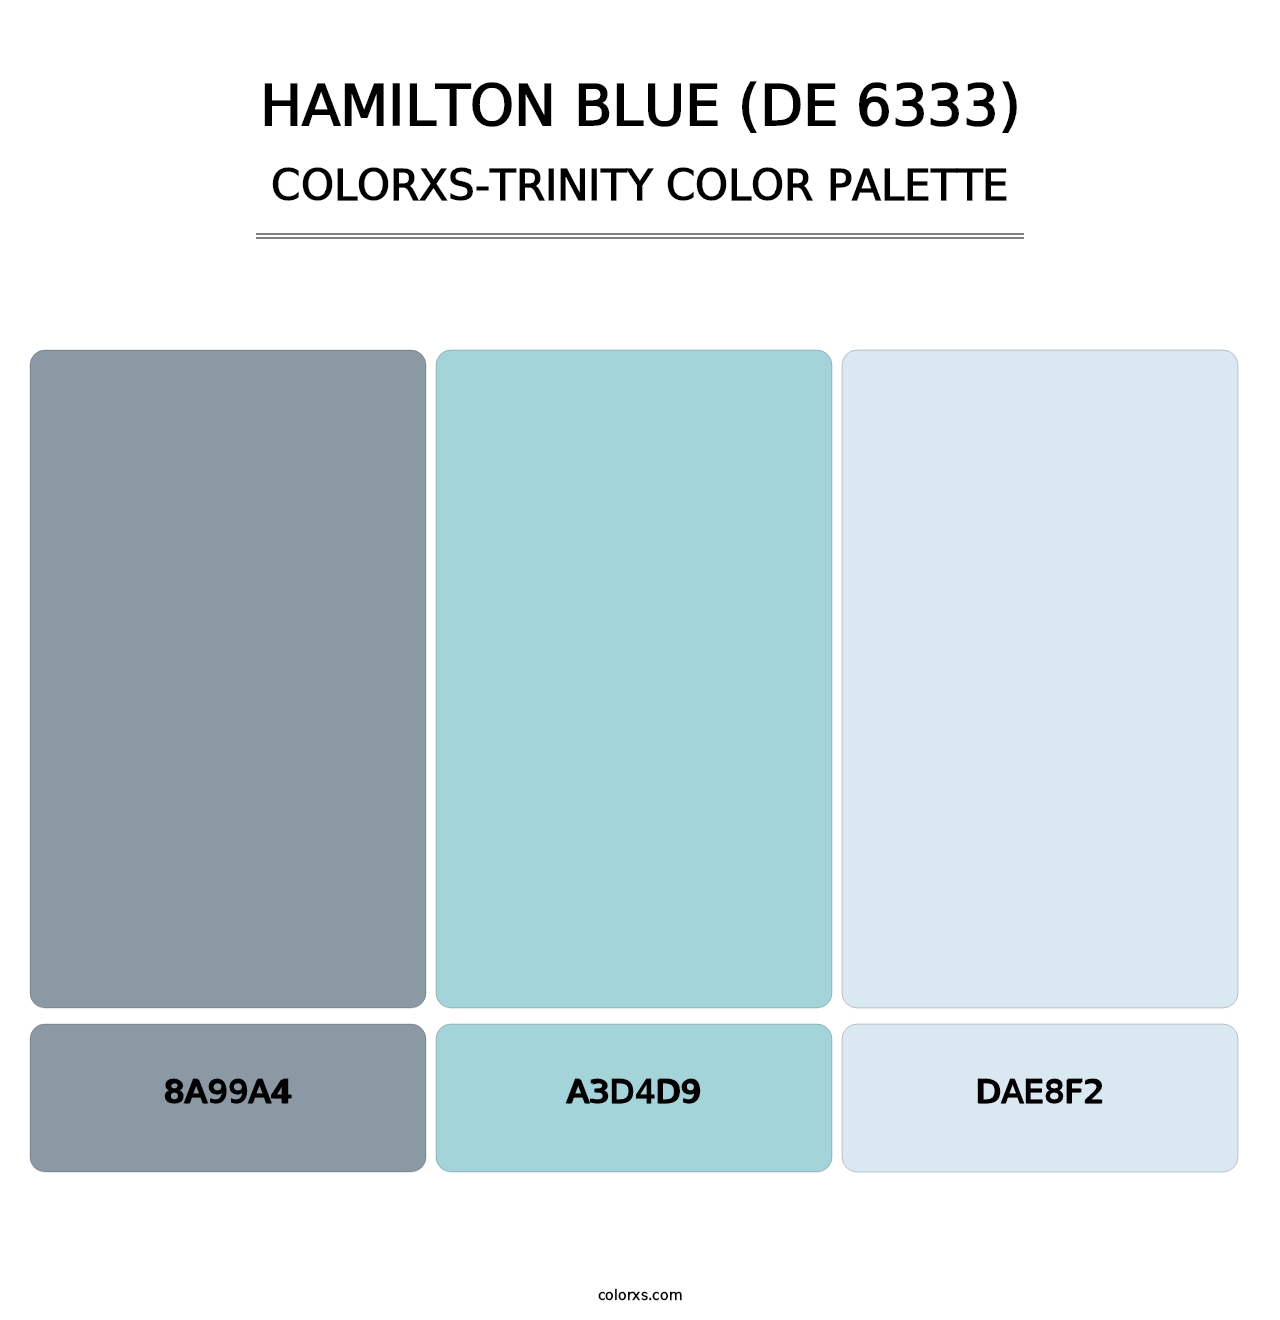 Hamilton Blue (DE 6333) - Colorxs Trinity Palette